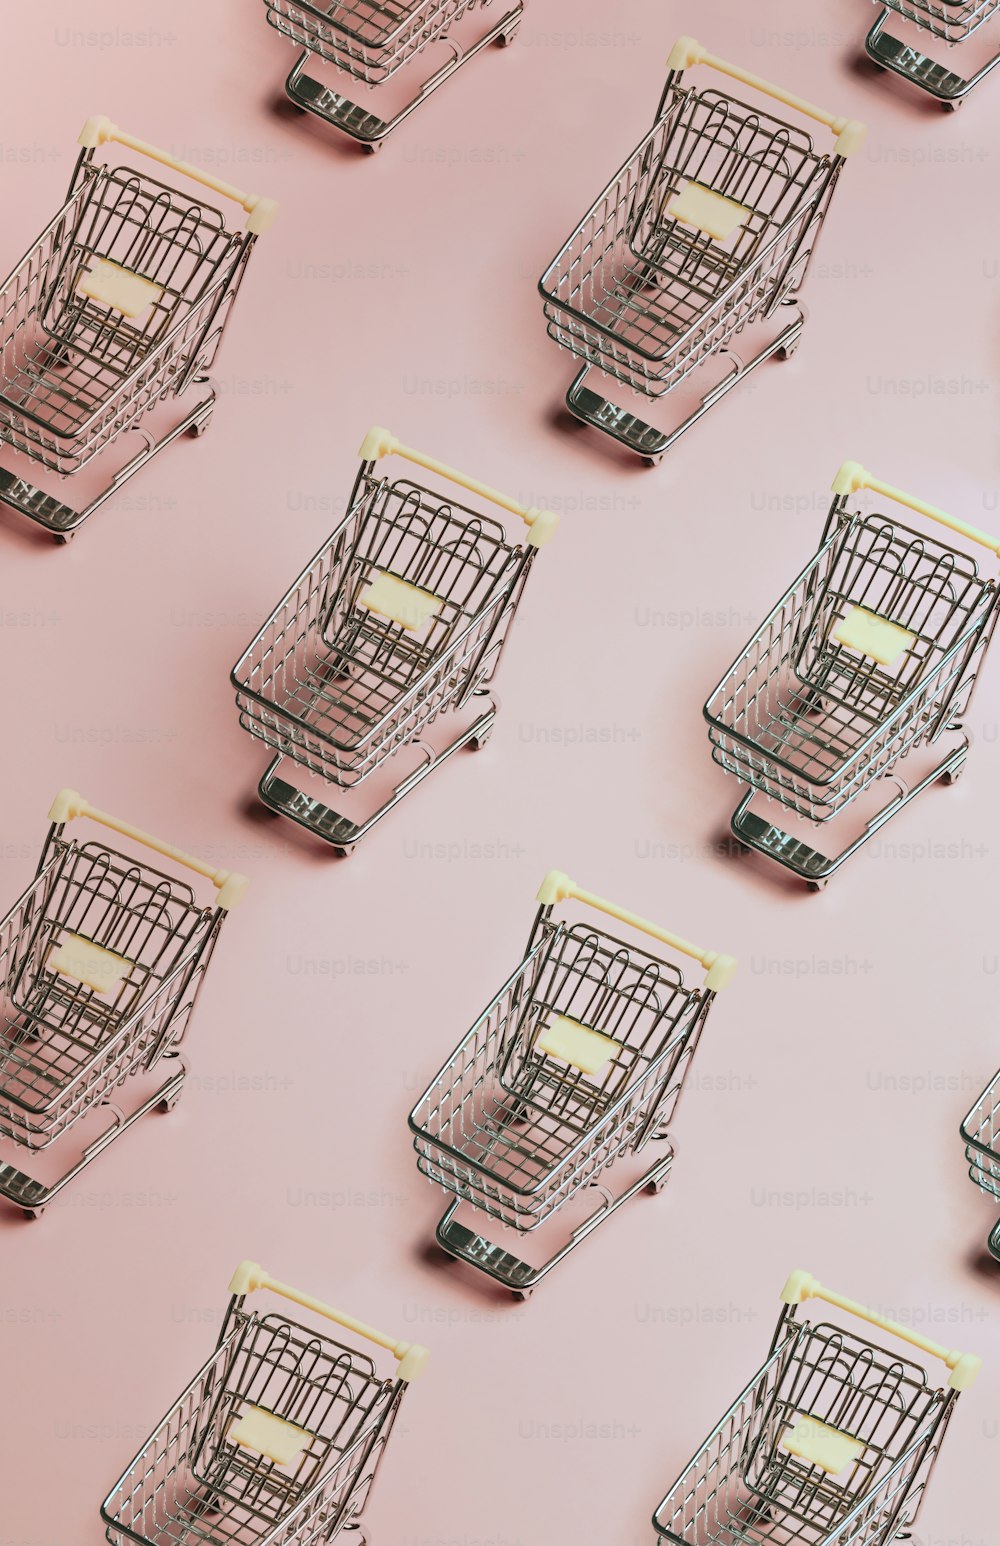 Eine Gruppe von Einkaufswagen, die auf einer rosafarbenen Oberfläche sitzen